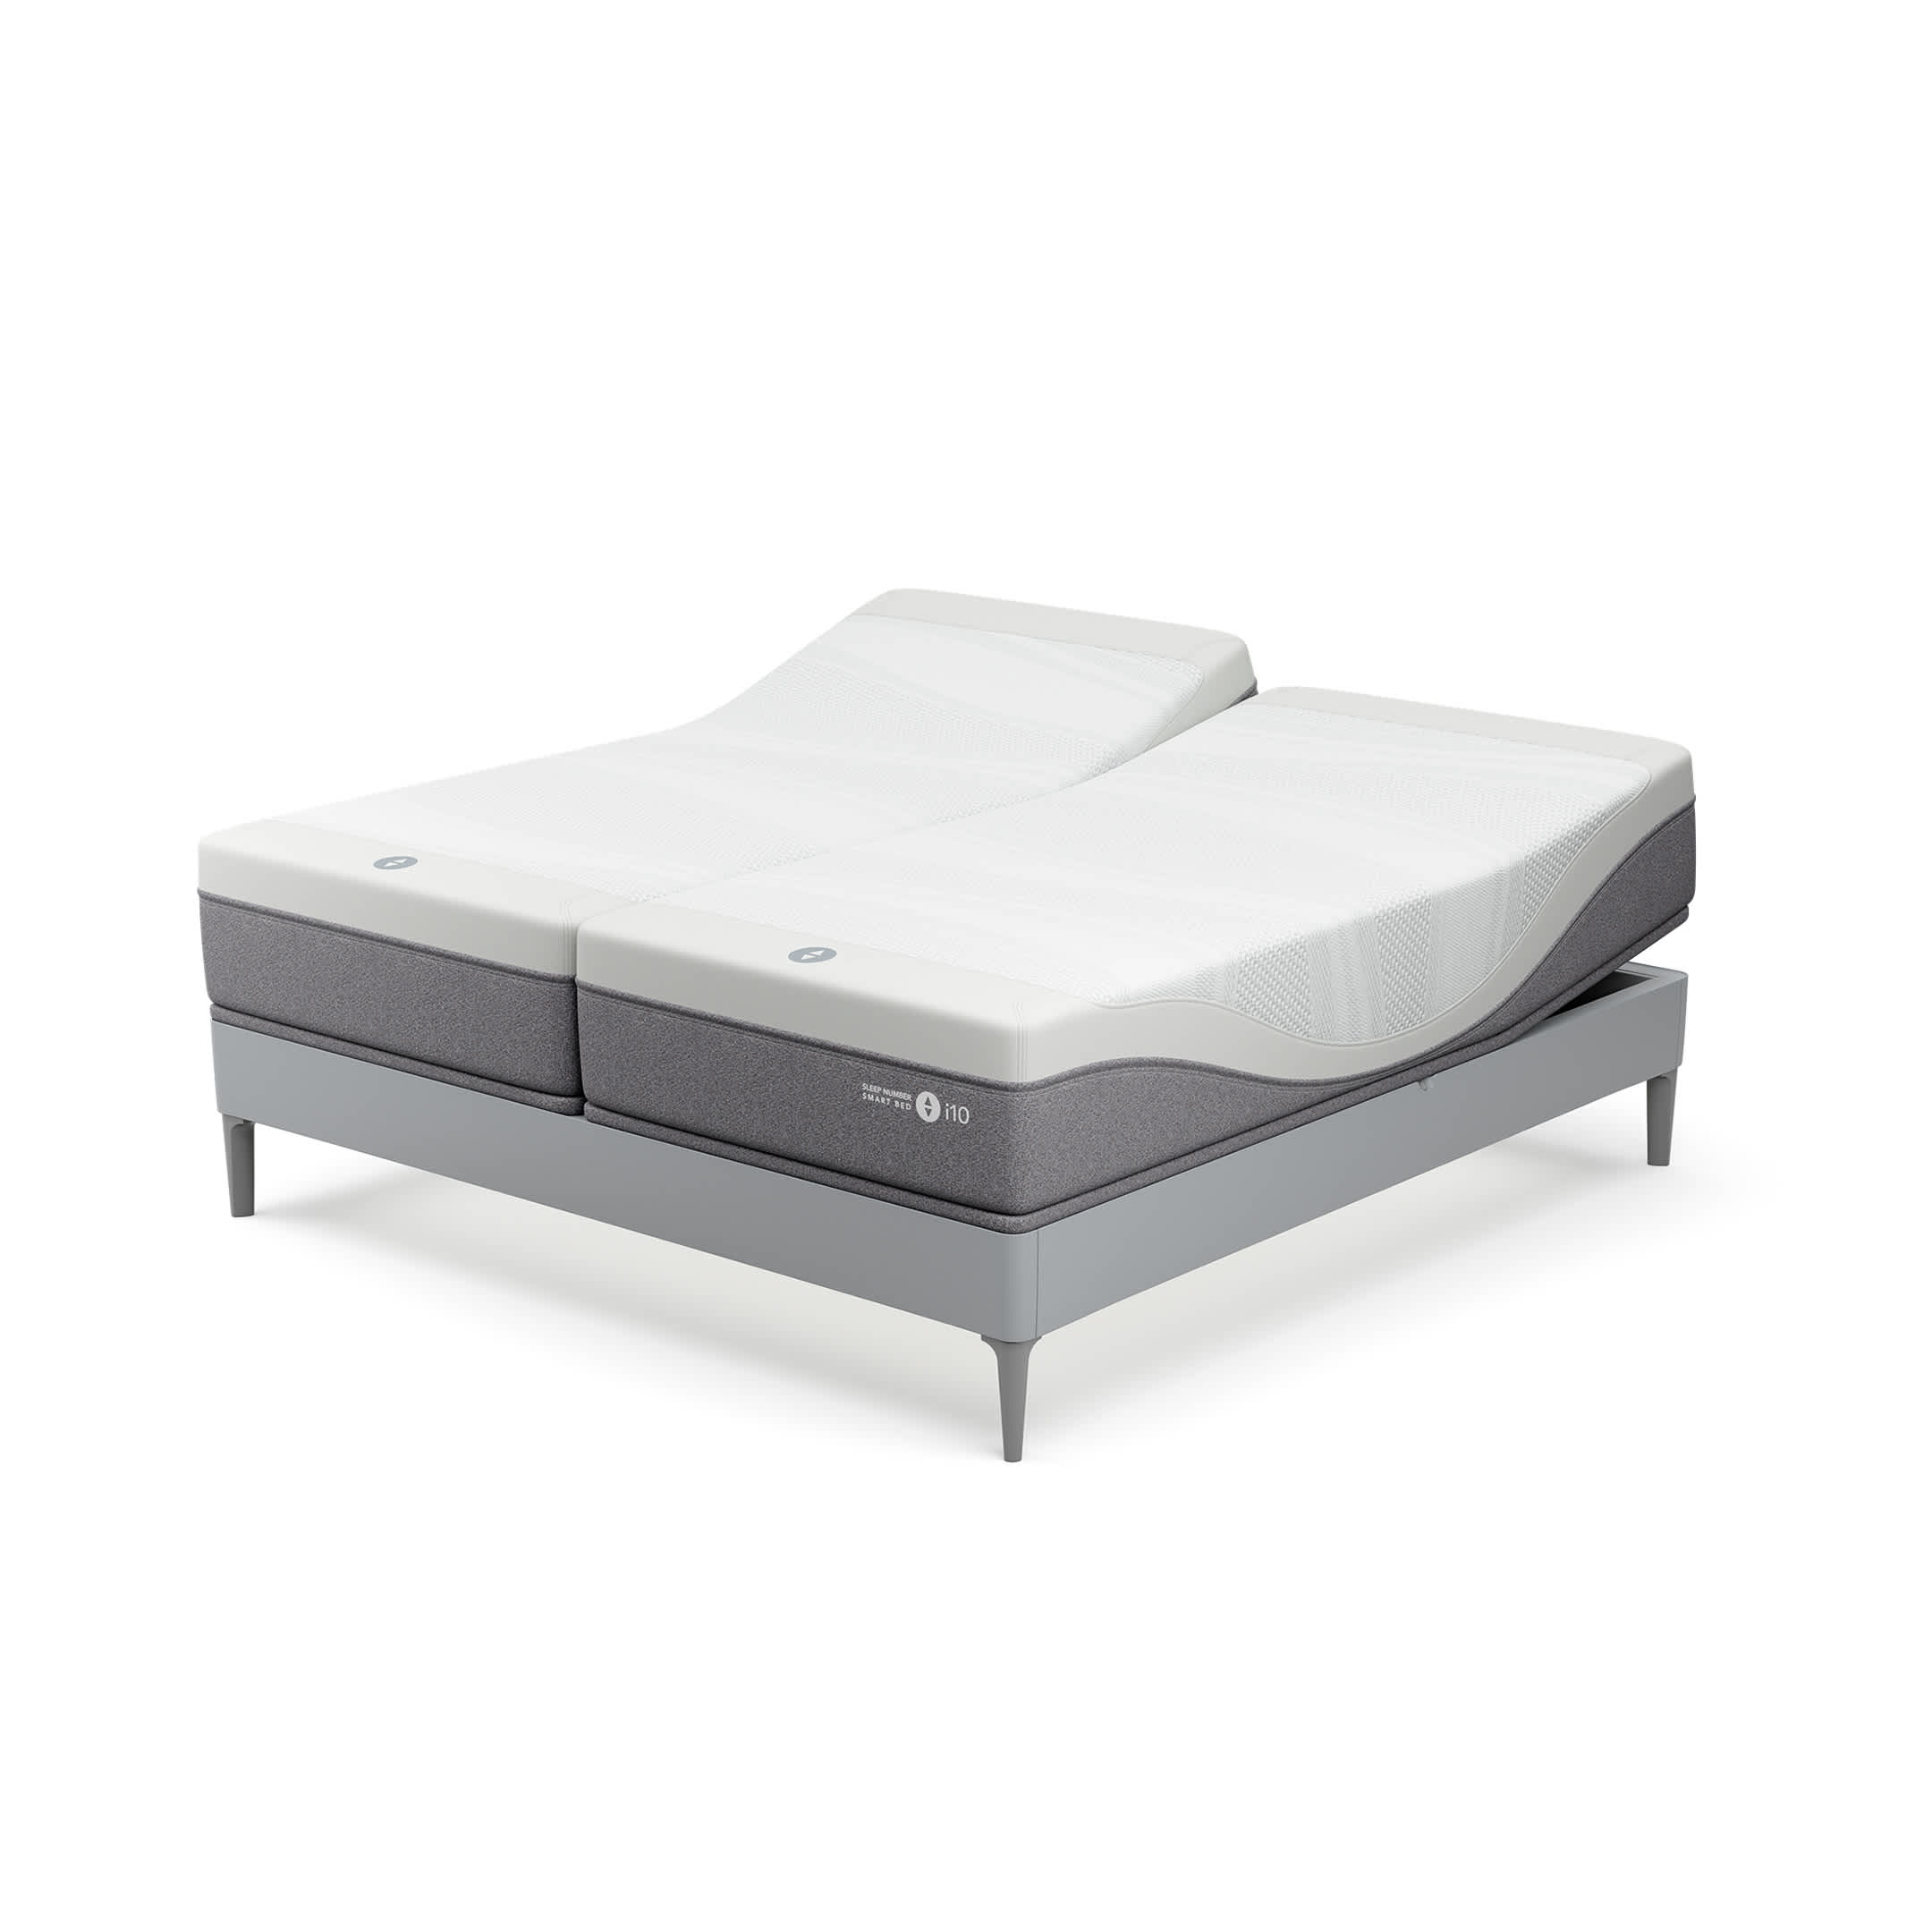 Personal Comfort R13 Smart Bed v Sleep Number 360 i10 Bed